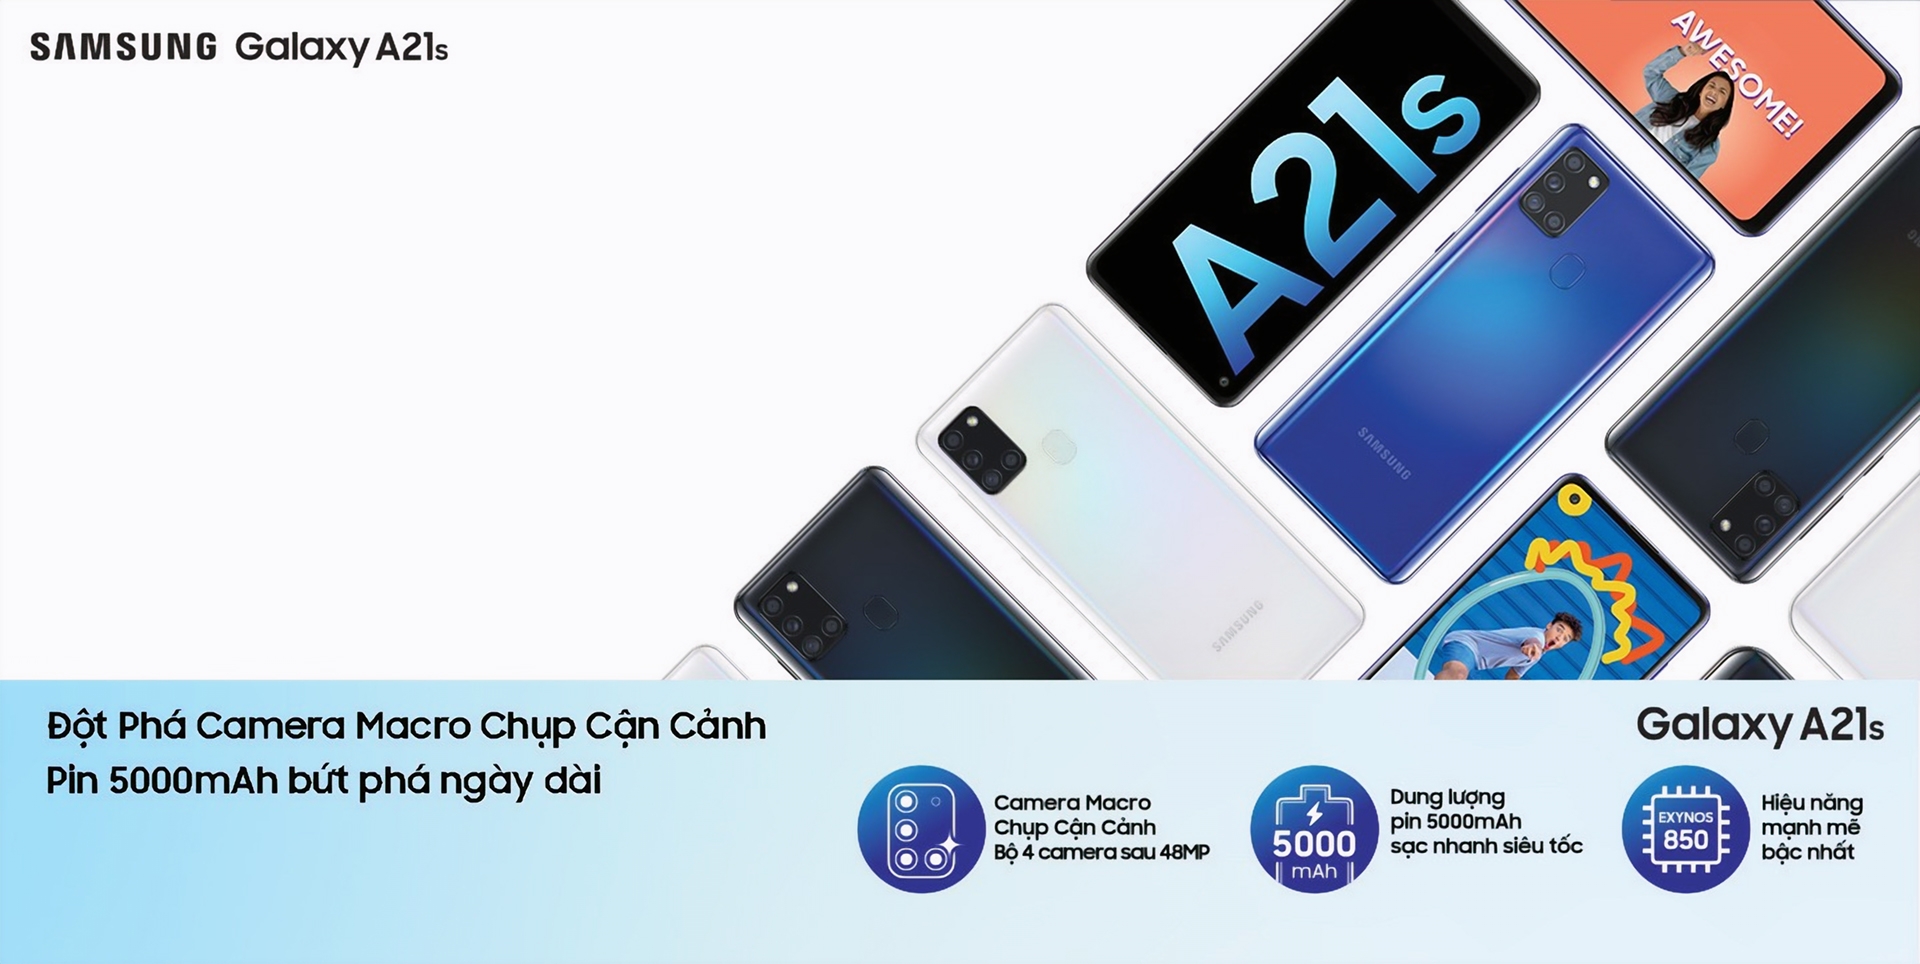 Samsung giới thiệu Galaxy A21s tại Việt Nam, 4 camera sau, pin khủng, giá từ 4,690,000 VND